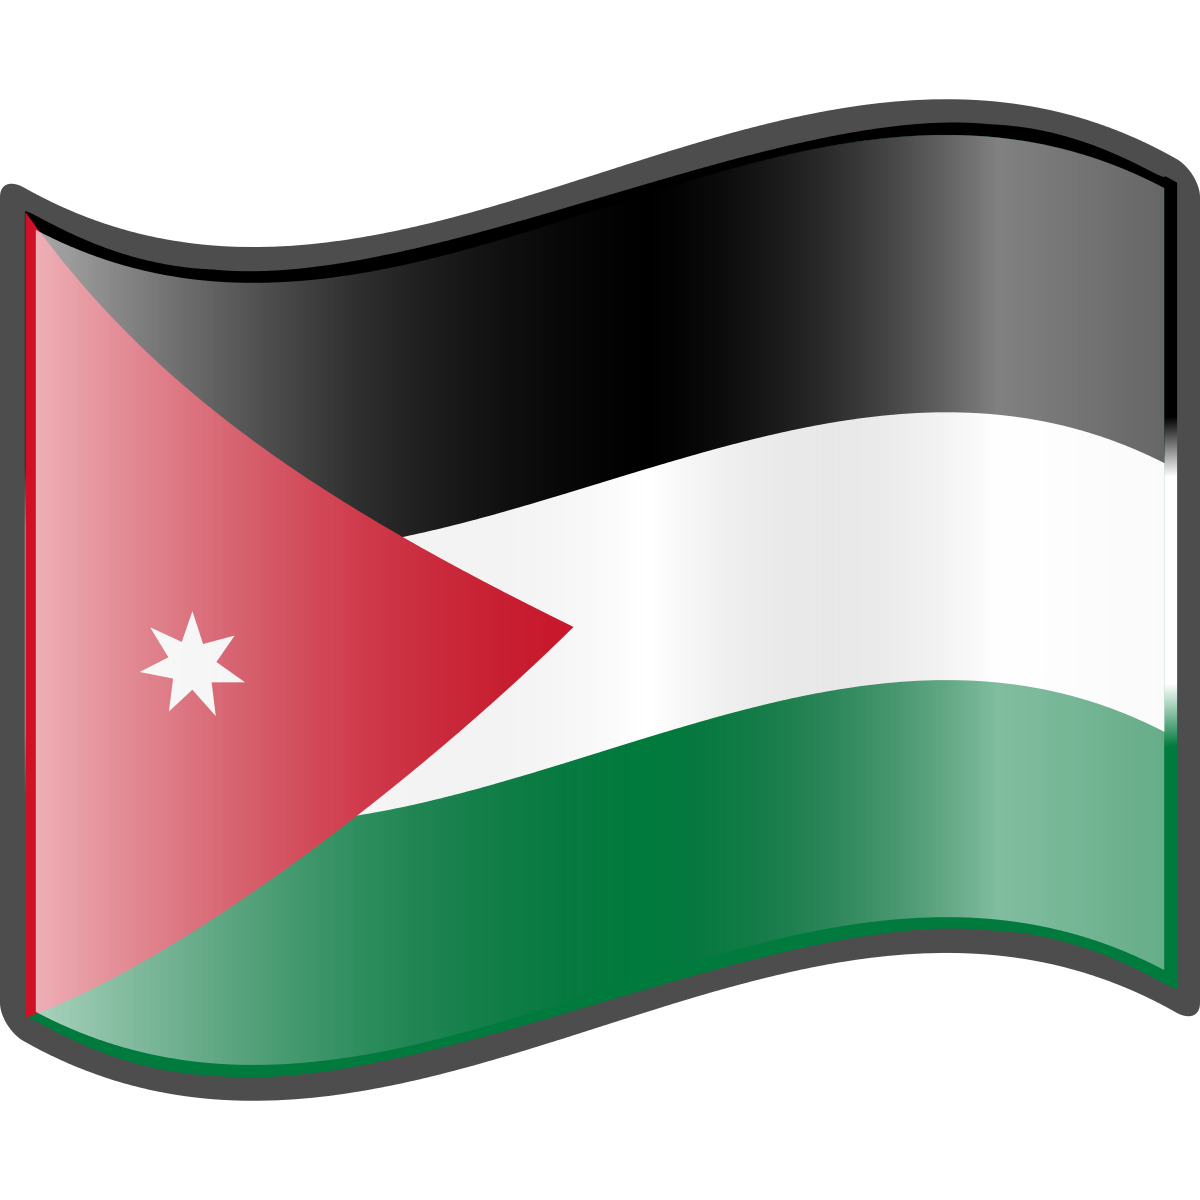 Jordan Flag Background PNG Image